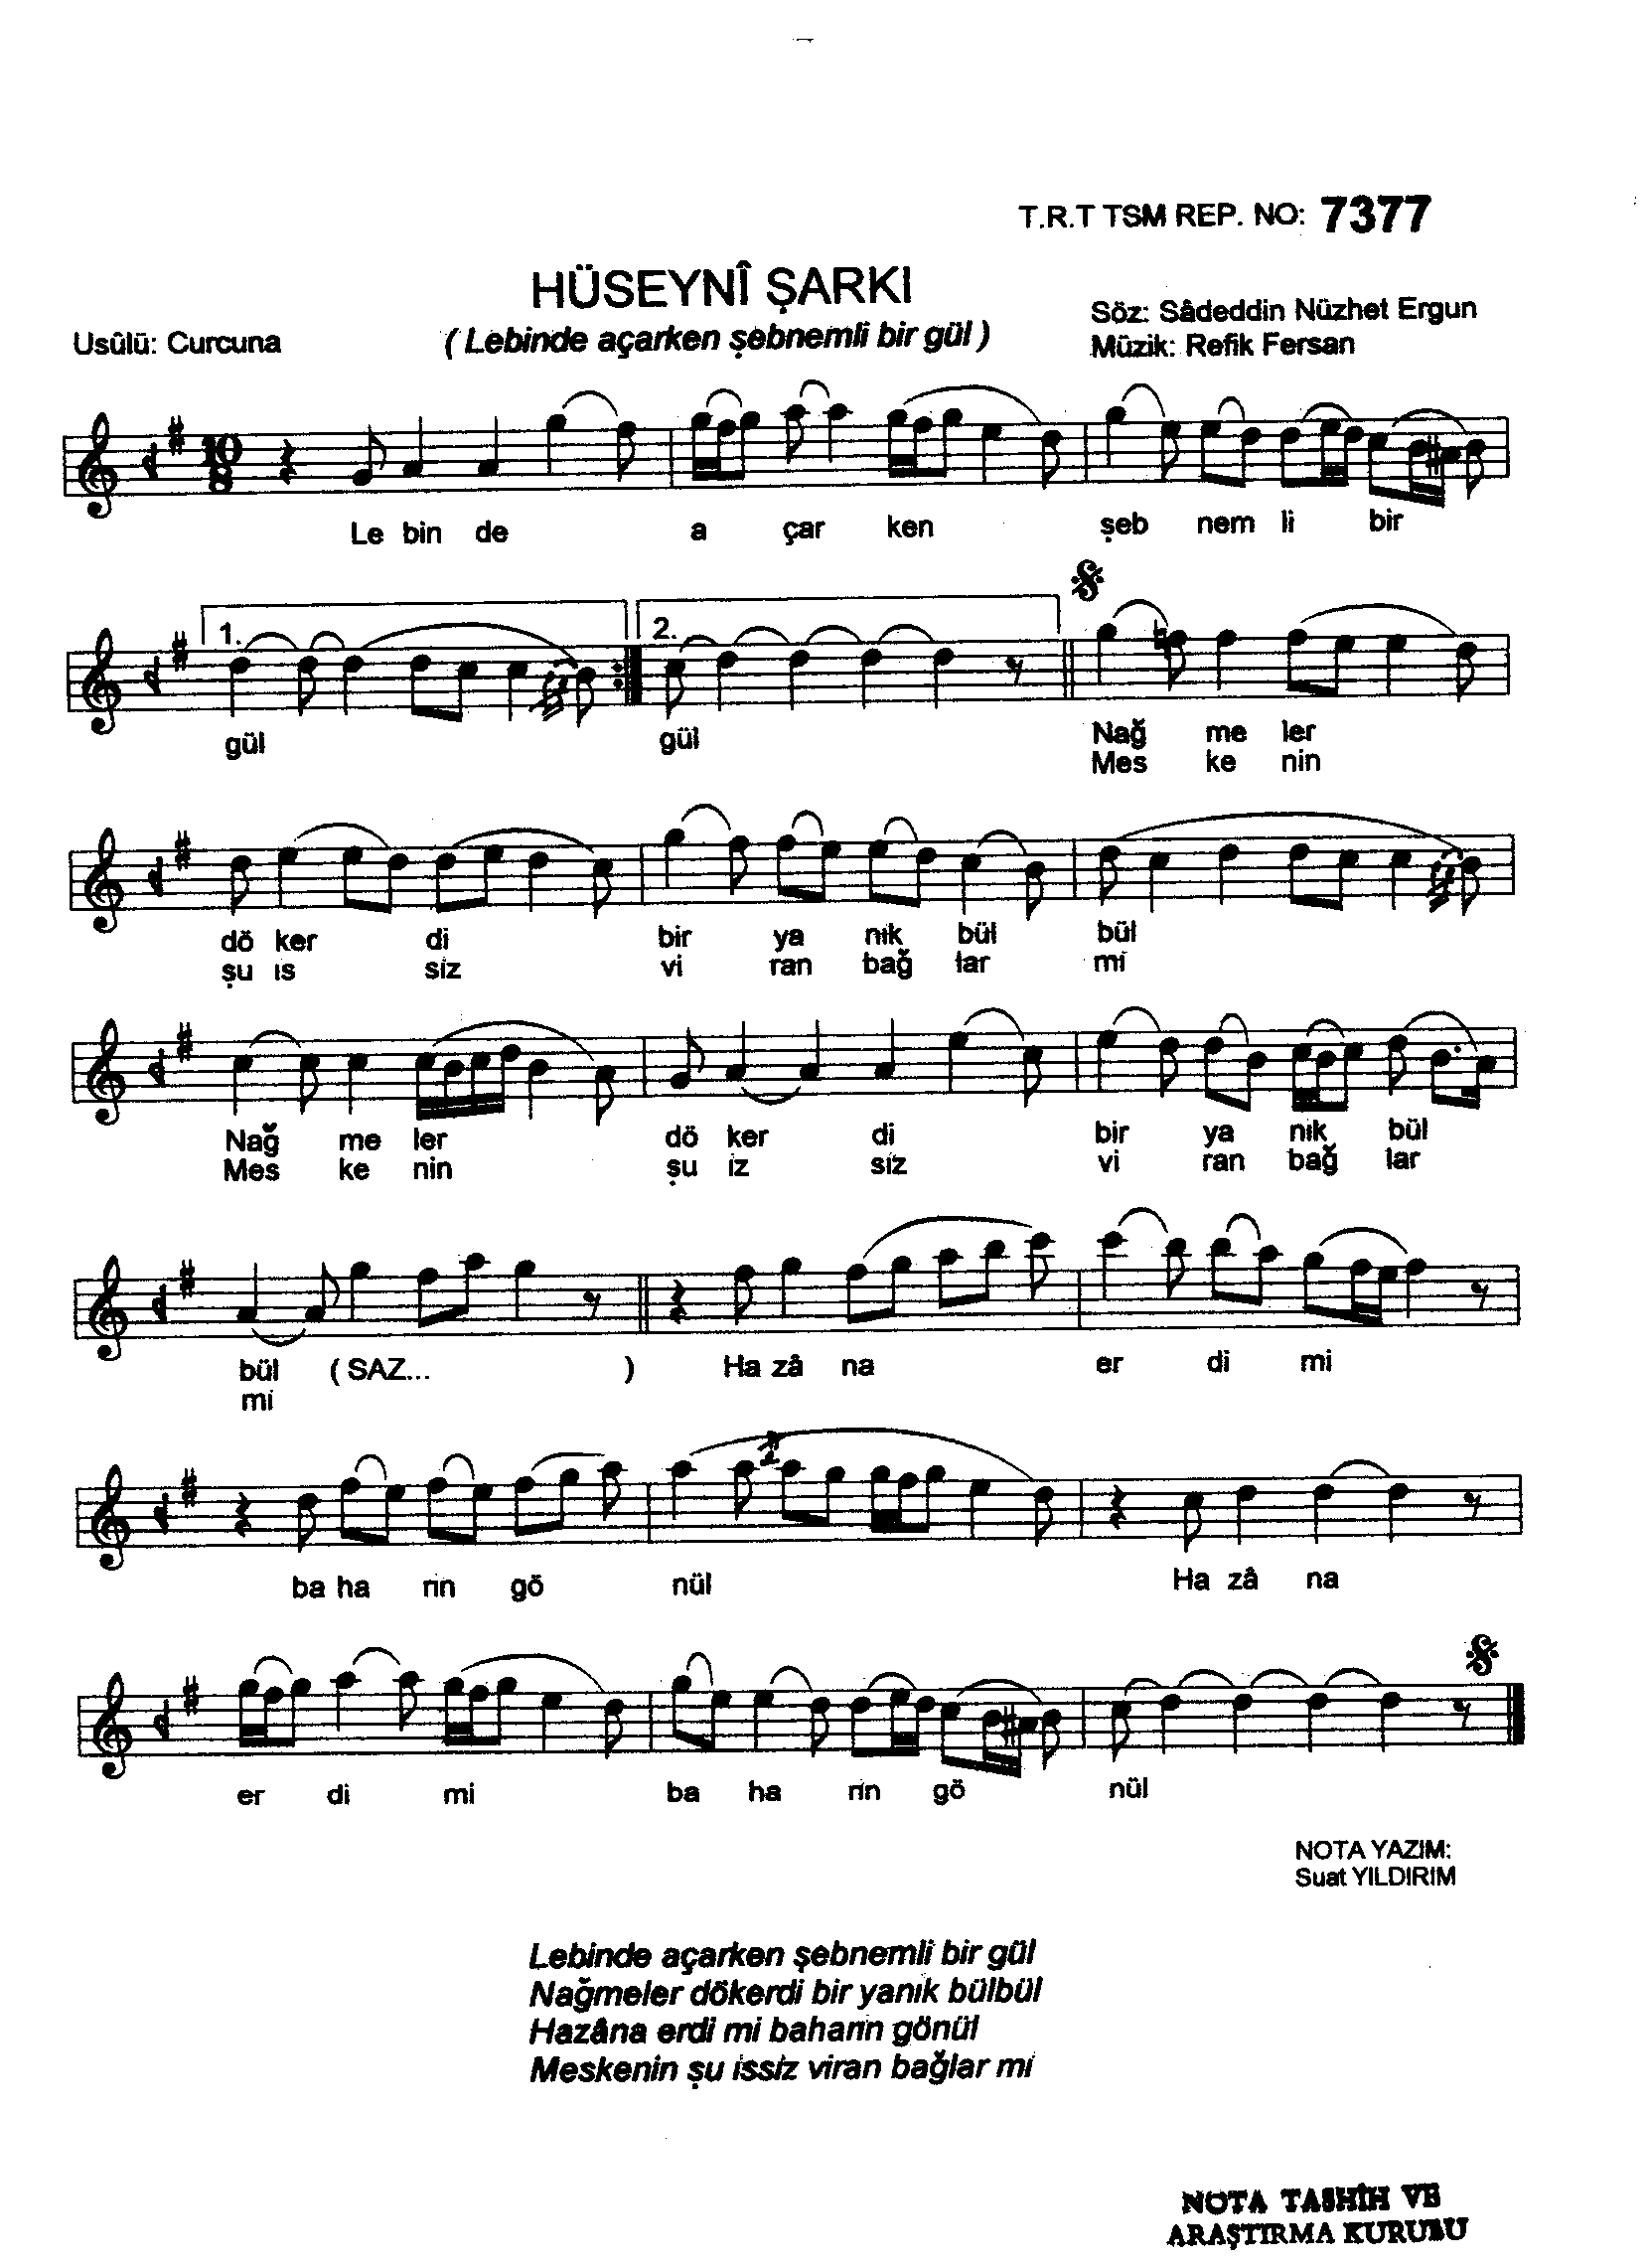 Hüseynî - Şarkı - Refik Fersan - Sayfa 1